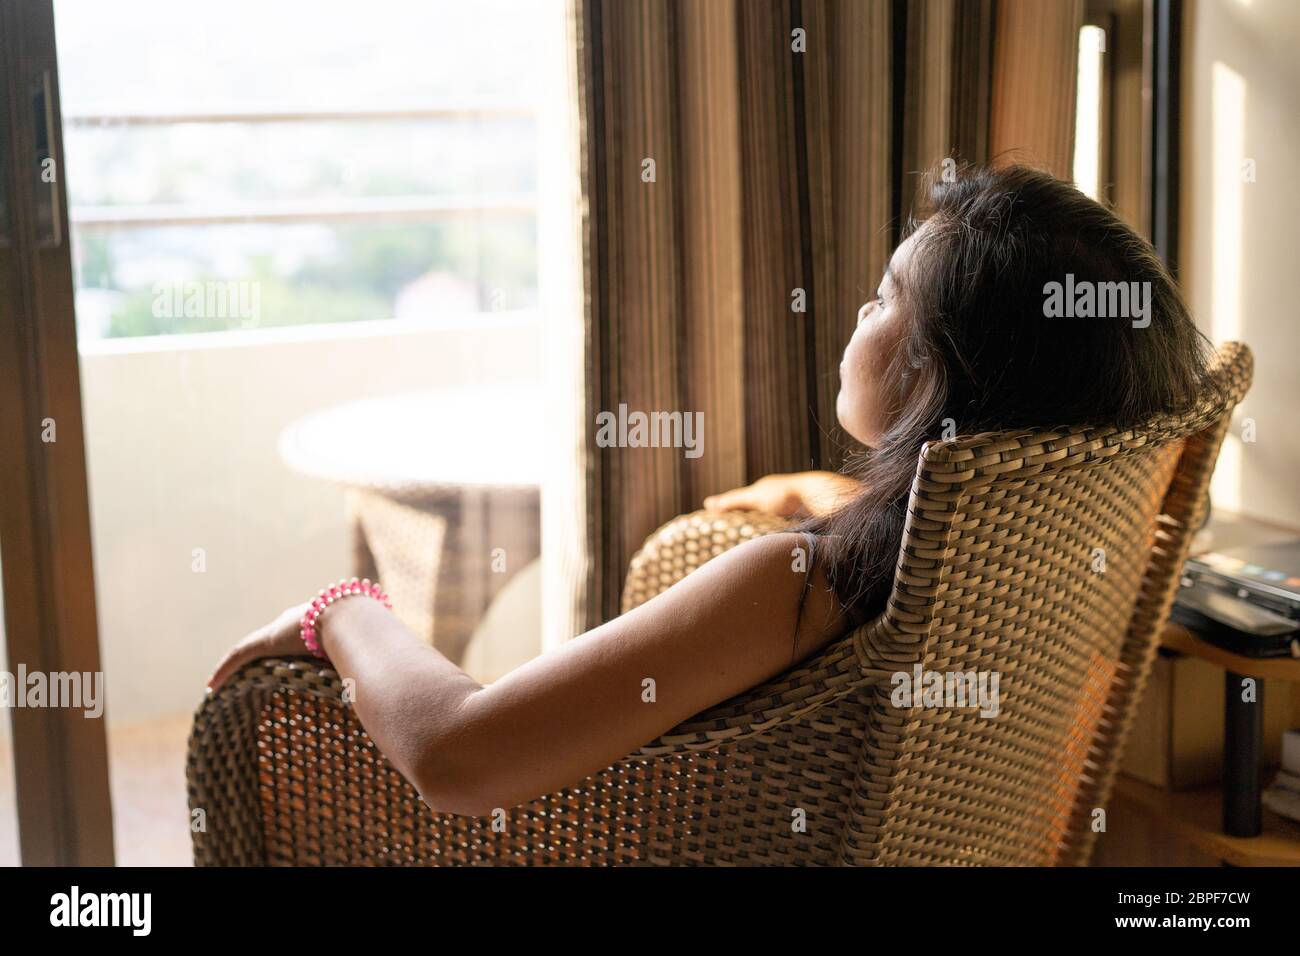 Immagine concettuale dei problemi che circondano la salute mentale.UNA donna seduta in una sedia stares fuori da una finestra aperta durante un periodo di quarantena nel COVID-19 Pandemic 2020 Foto Stock